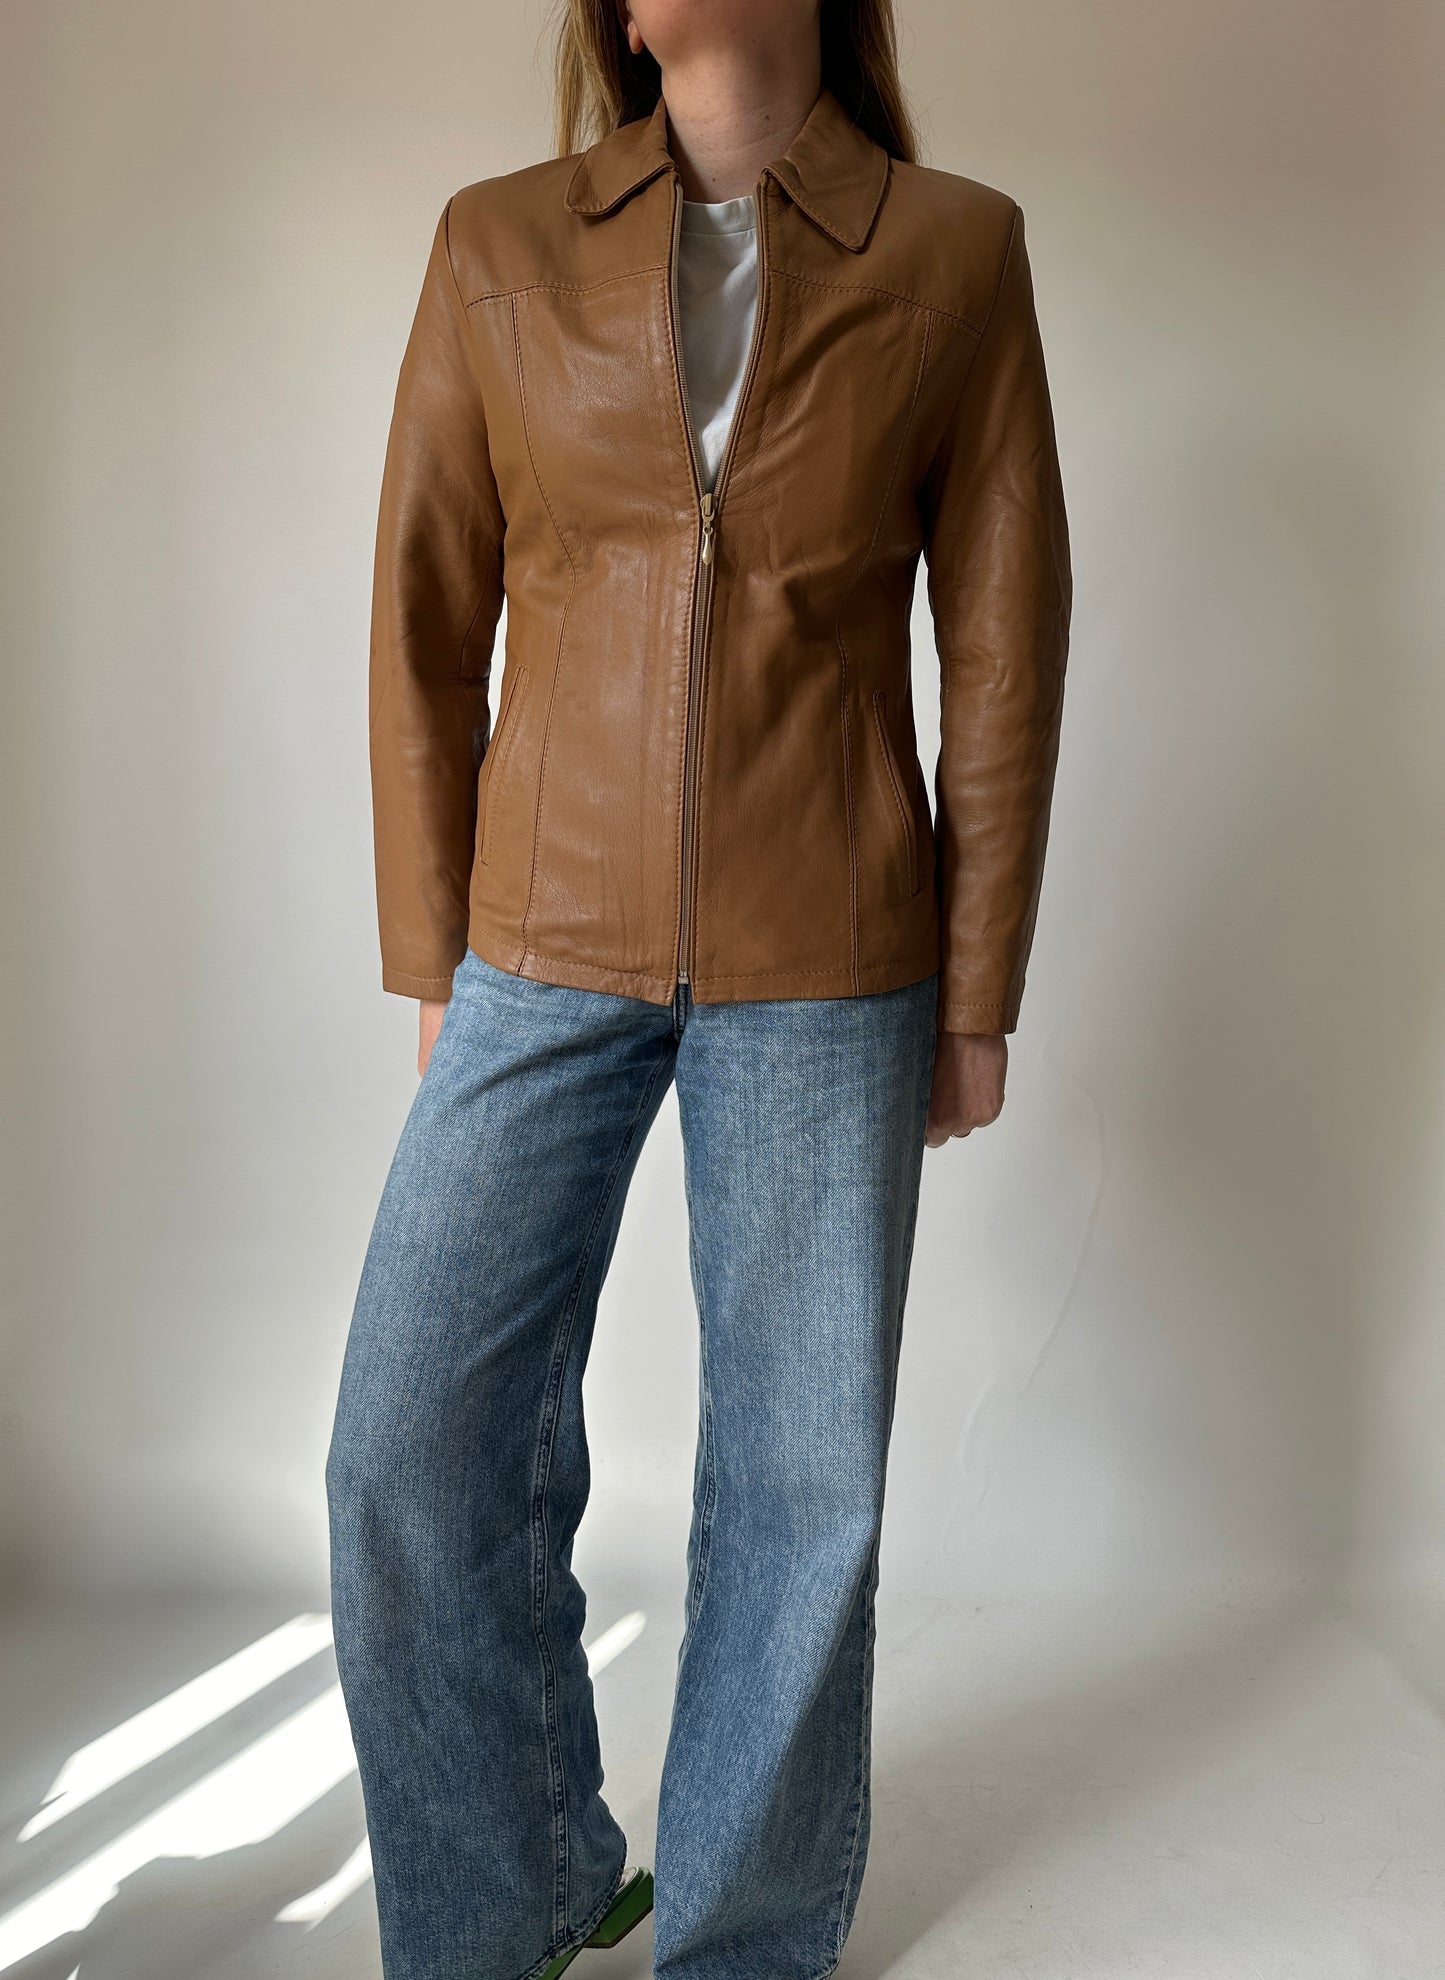 Soft camel leather jacket